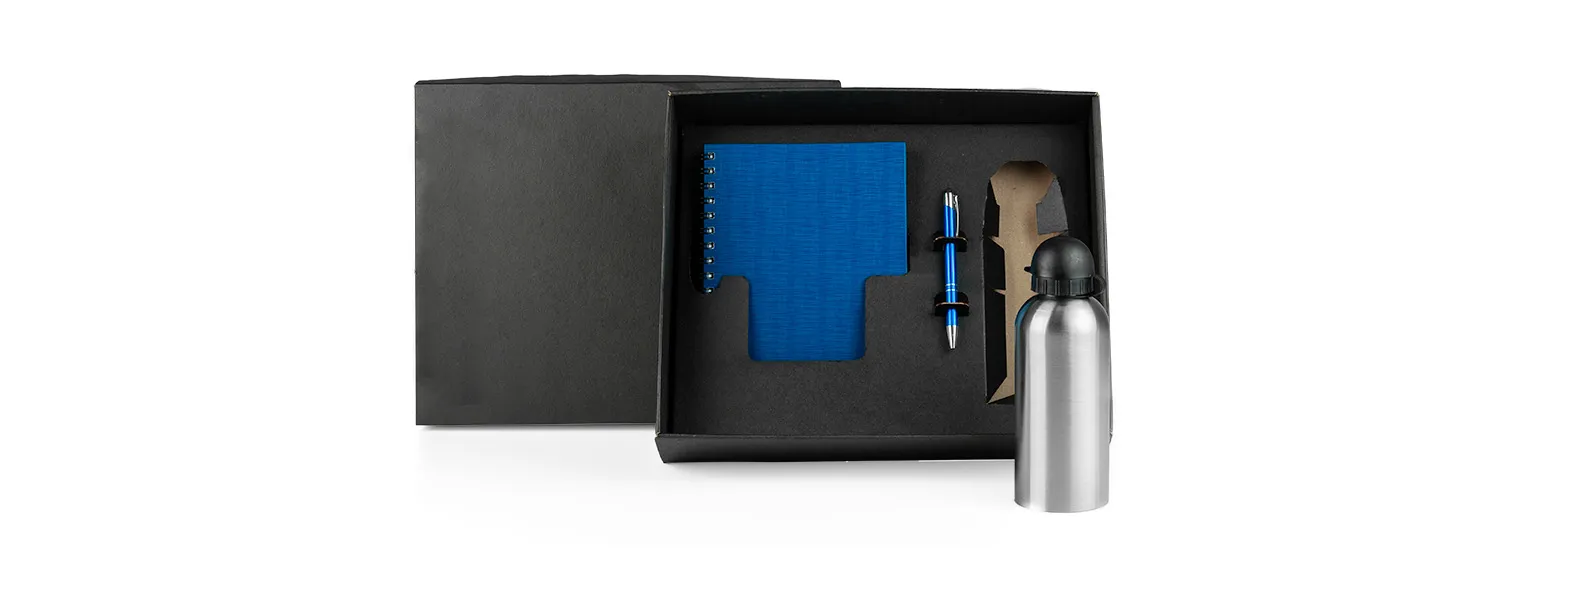 Caderno para anotações wire-o azul com capa dura revestida em percalux linho, caneta esferográfica em alumínio azul e squeeze em aço inox com tampa rosqueável preta em polipropileno.